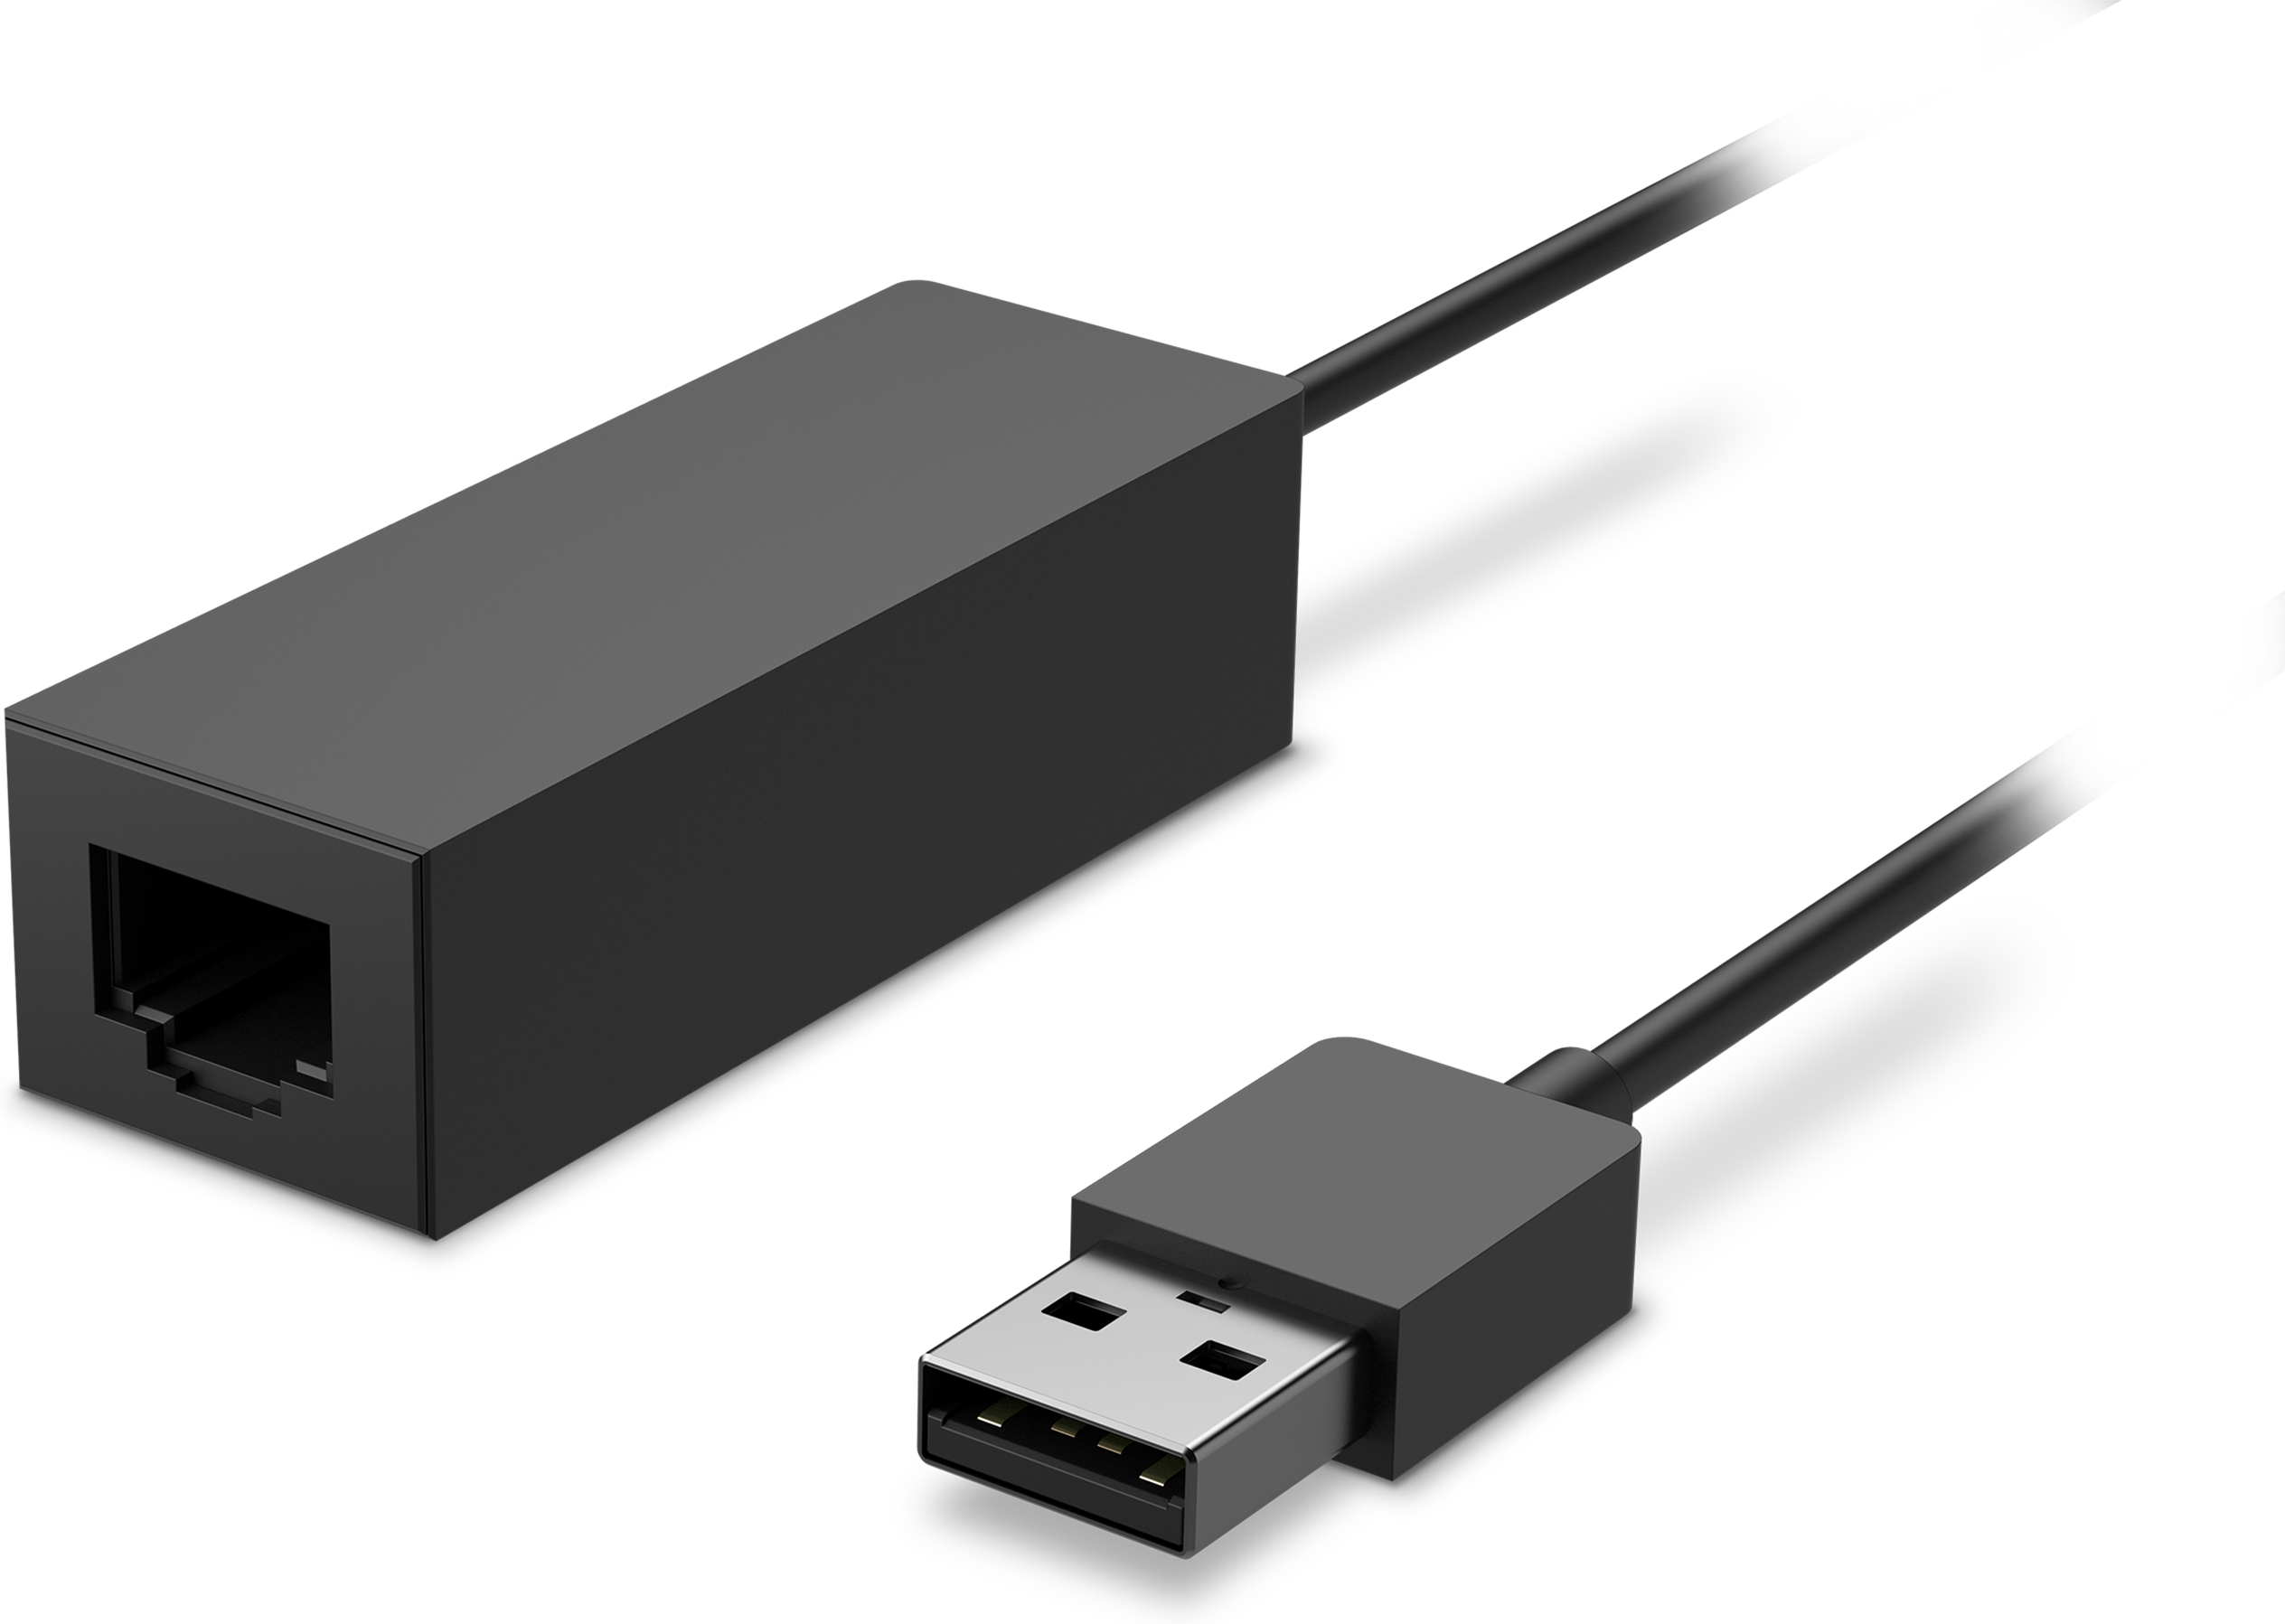 Surface USB 3.0 ギガビット Ethernet アダプタ(Microsoft)格安バーゲンランキング